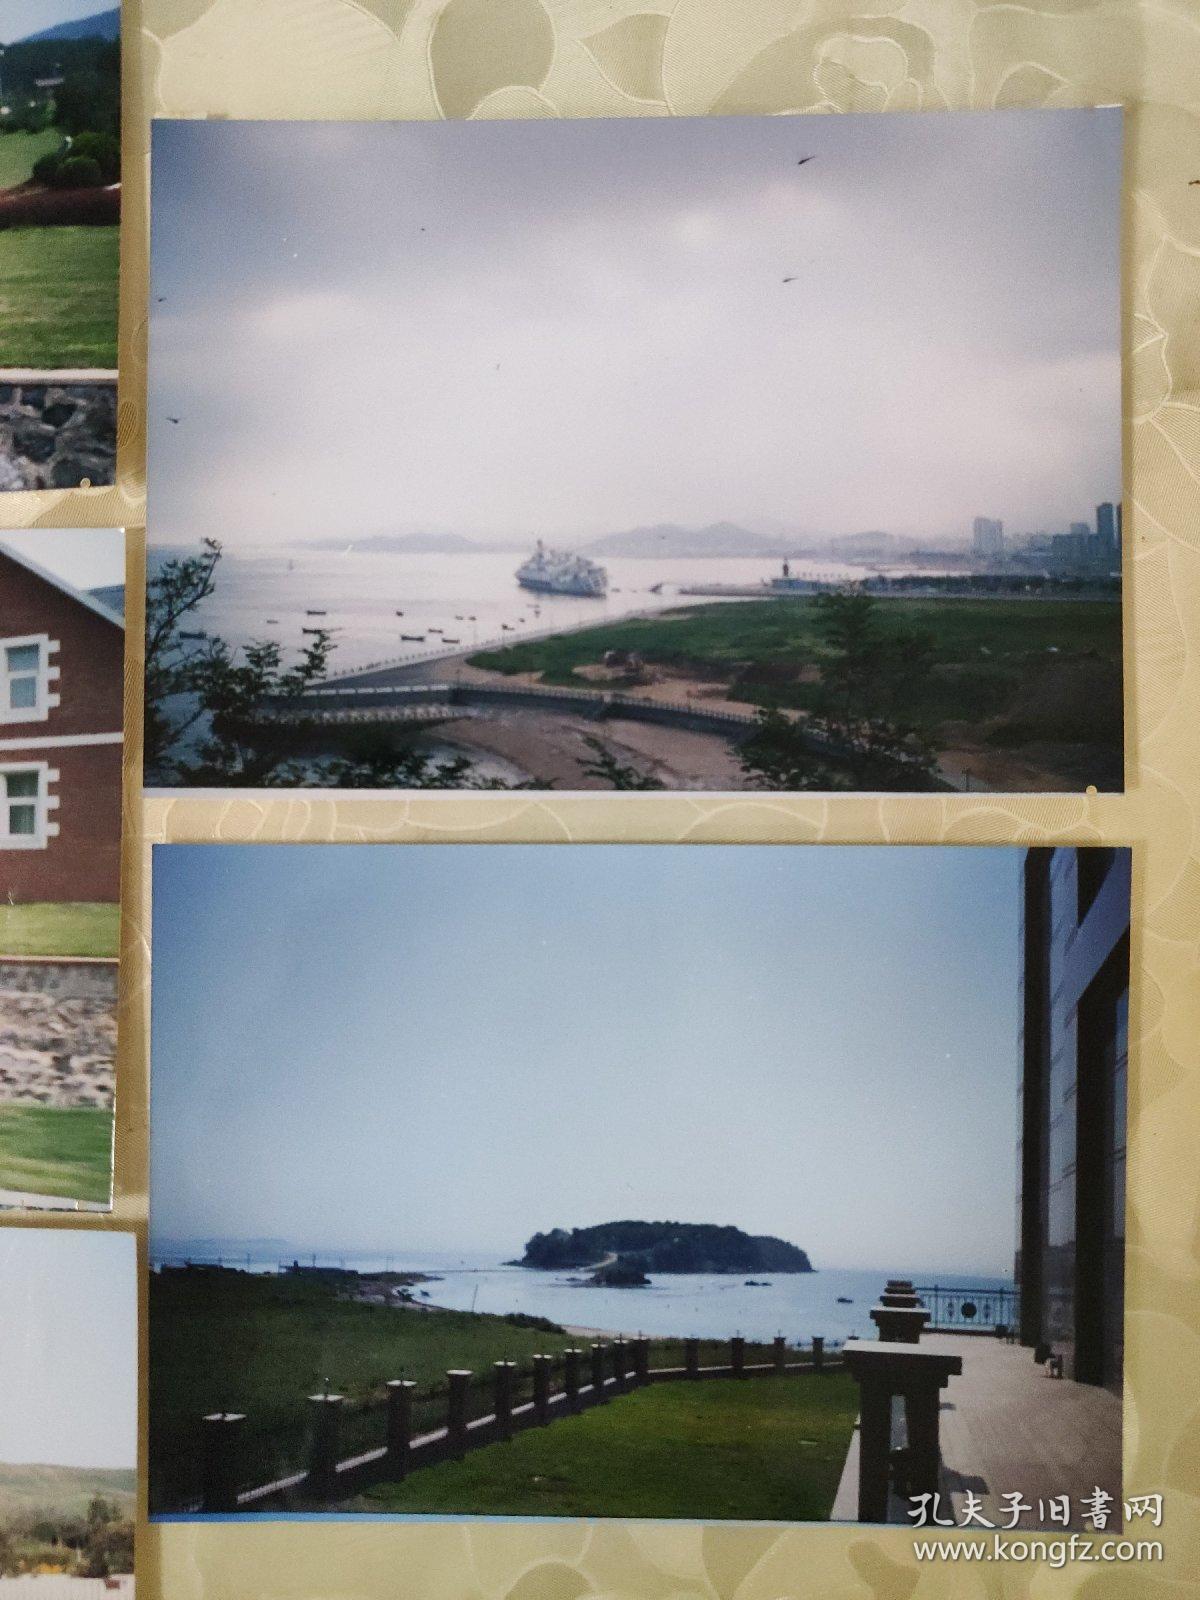 彩色照片： 大连 朝鲜等城市风景的彩色照片     共8张照片售       彩色照片箱2   0075